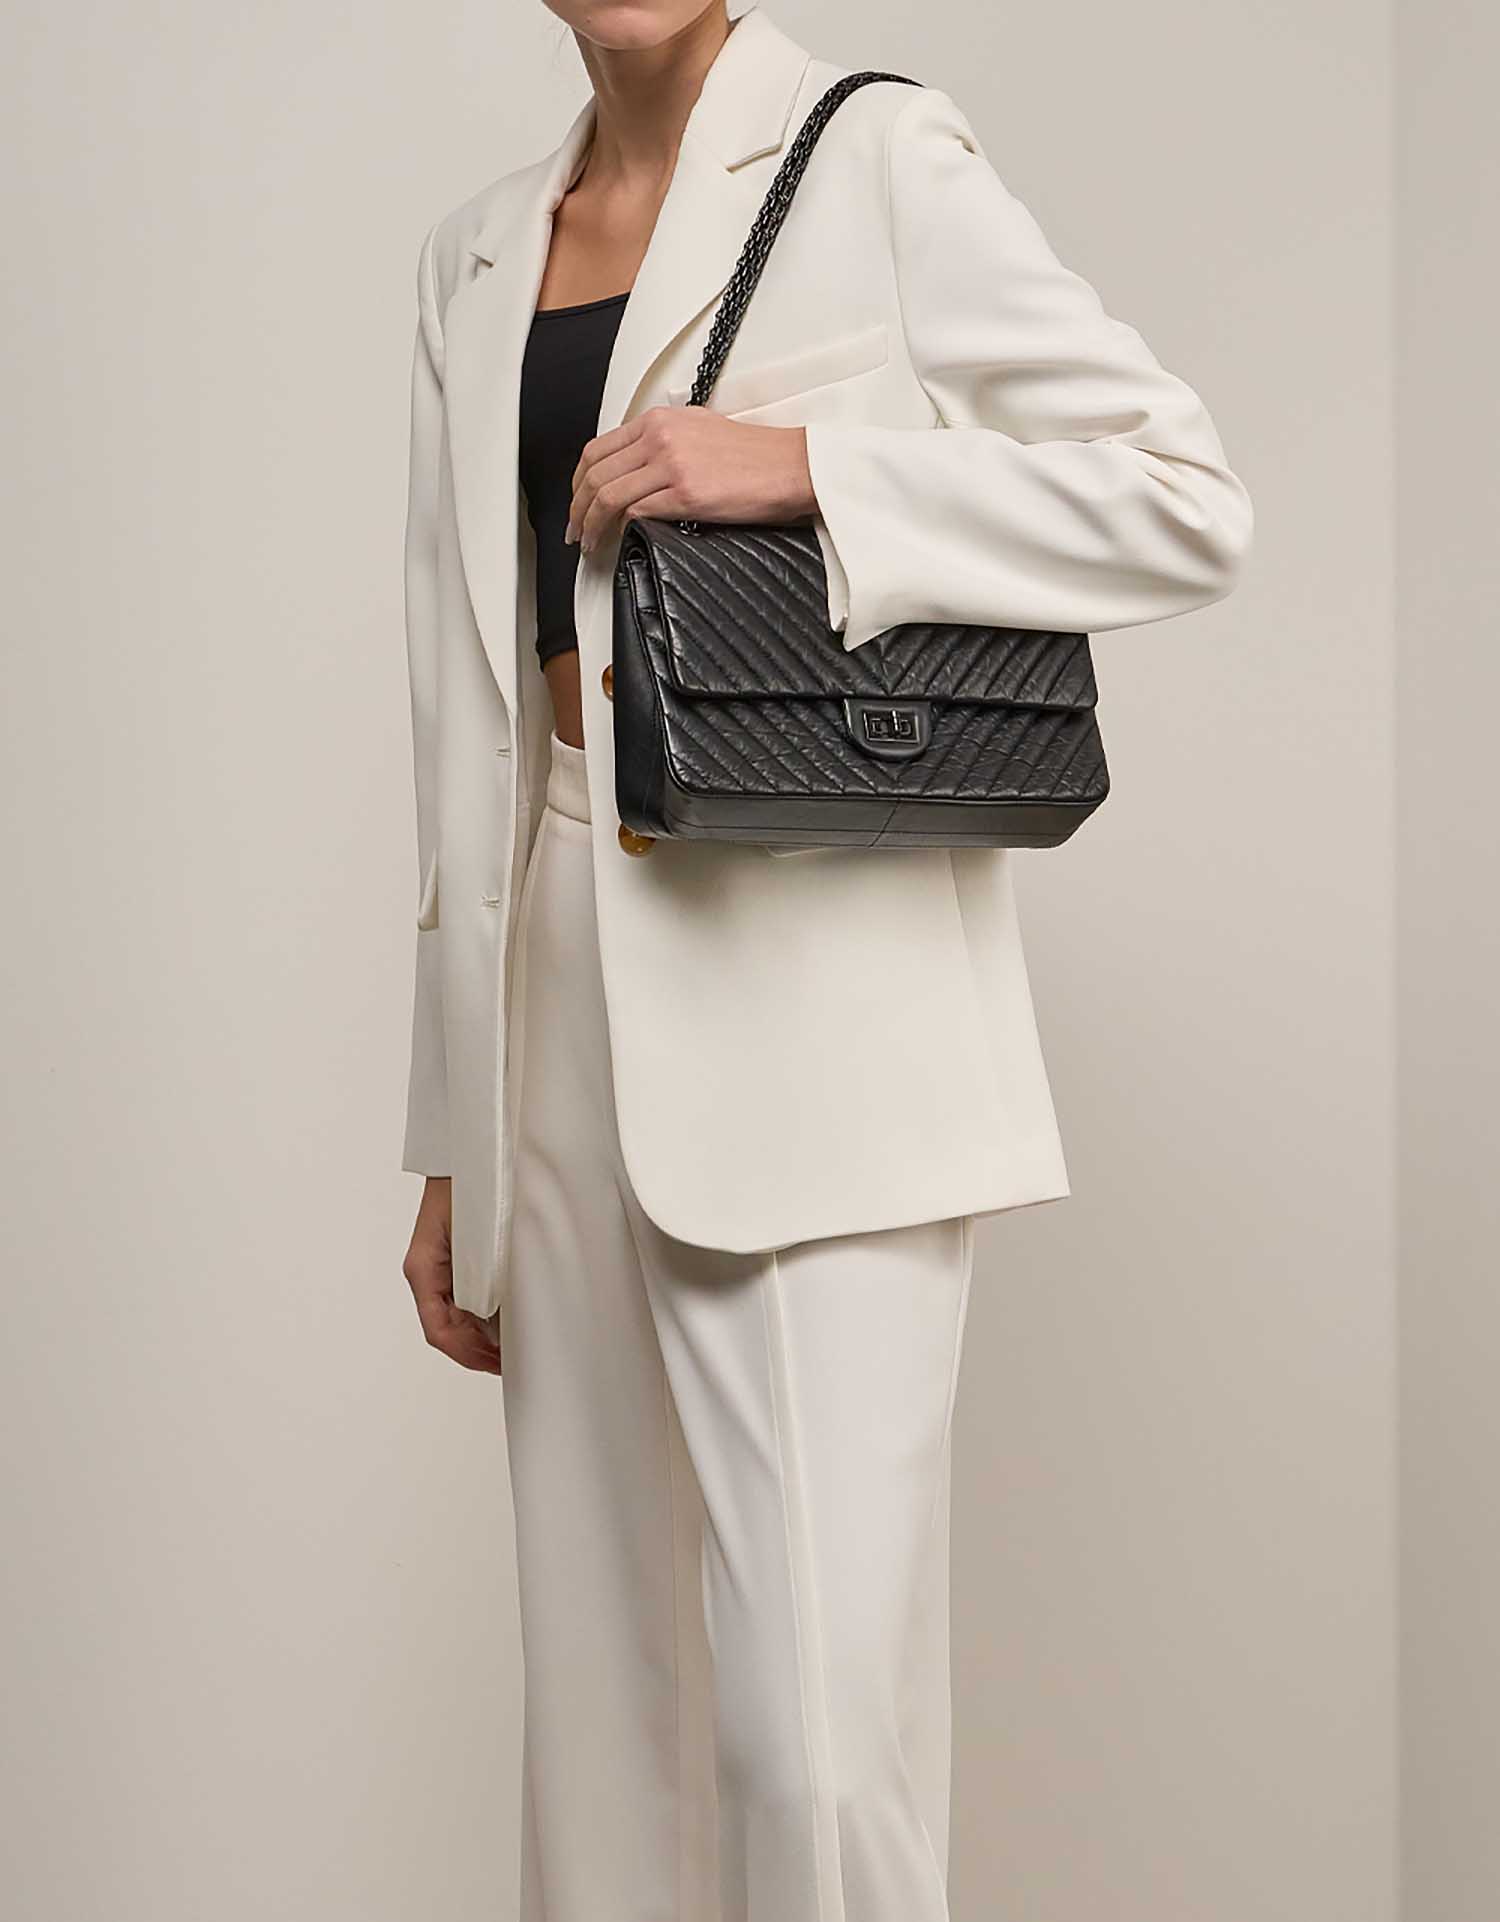 Chanel 2.55 Reissue 226 Aged Calf Black on Model | Sell your designer bag